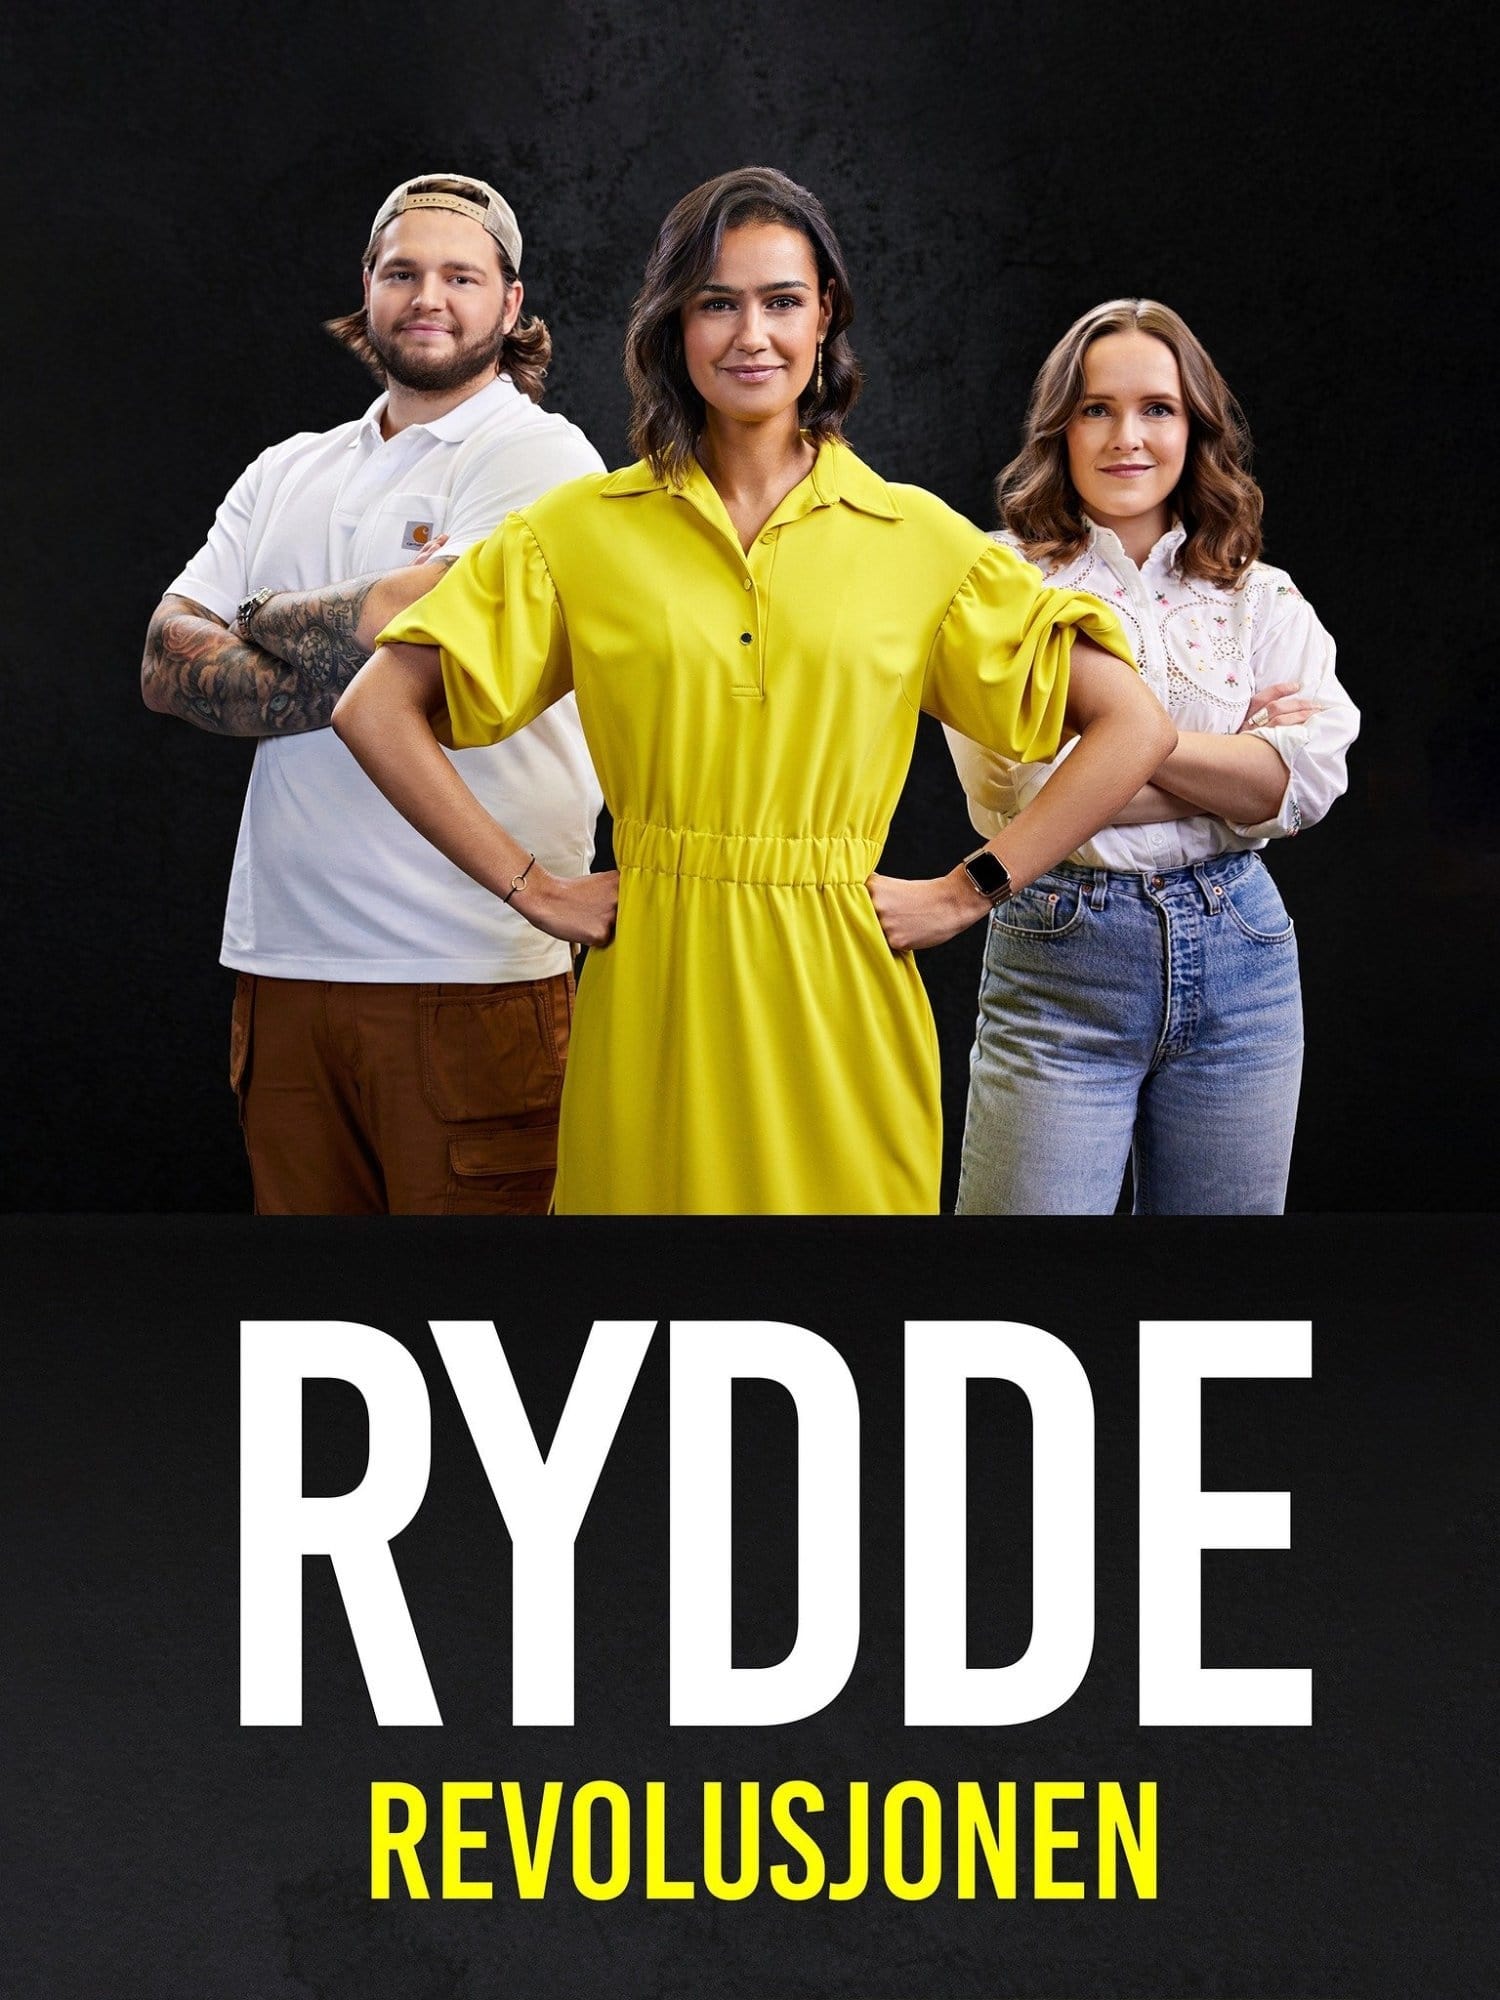 TV ratings for Rydderevolusjonen in the United Kingdom. TV 2 Play TV series